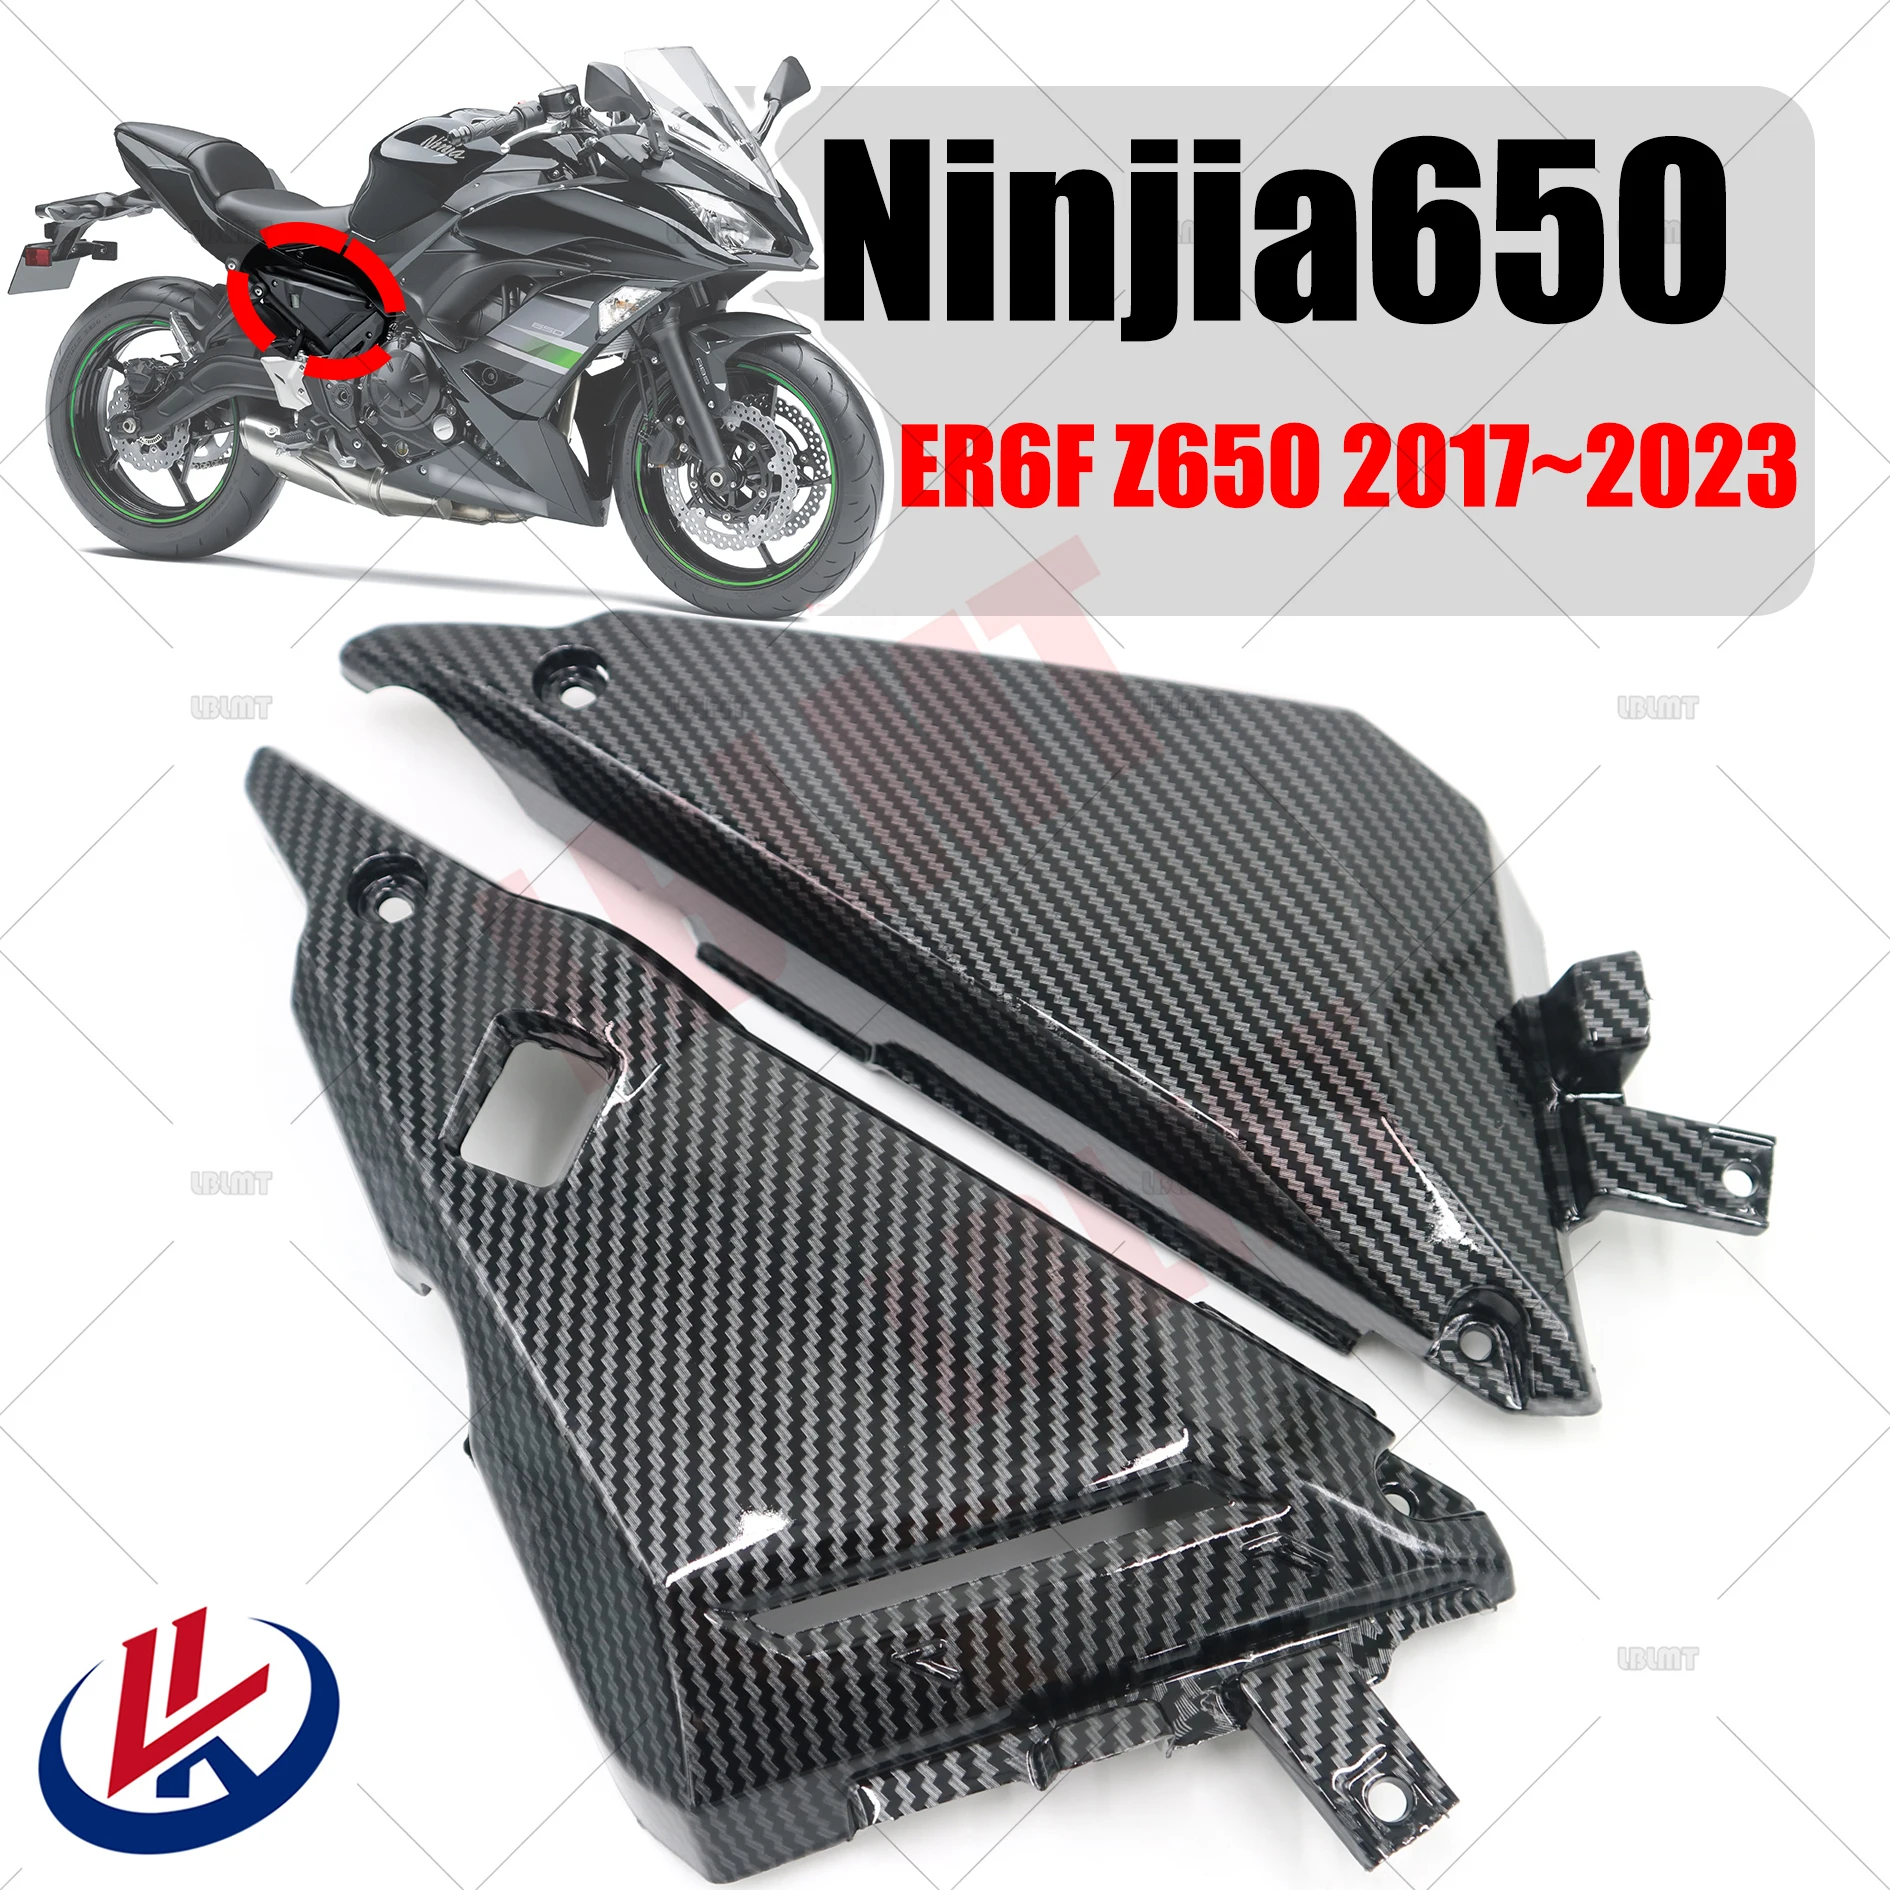 

For KAWASAKI Ninja 650 ER6F 2017 2018 2019 Z650 2017 2018 2019 2020 2021 2022 2023 Seat cushion lower cover plate fairing